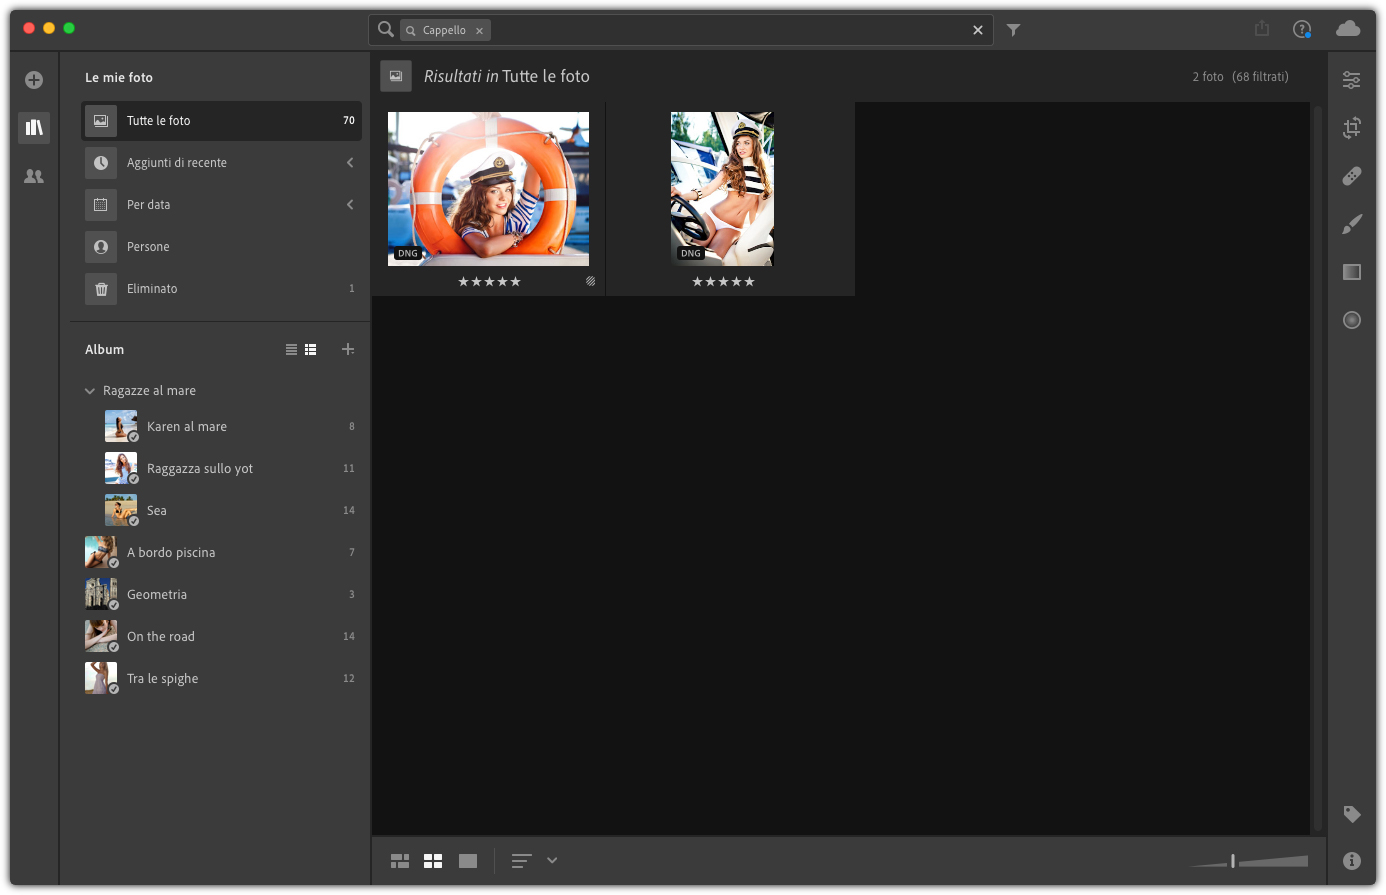 Figura 2: Lightroom CC con Adobe Sensei è riuscito in autonomia a trovare foto che contenevano la parola chiave scelta, sebbene questa non fosse stata impostata precedentemente